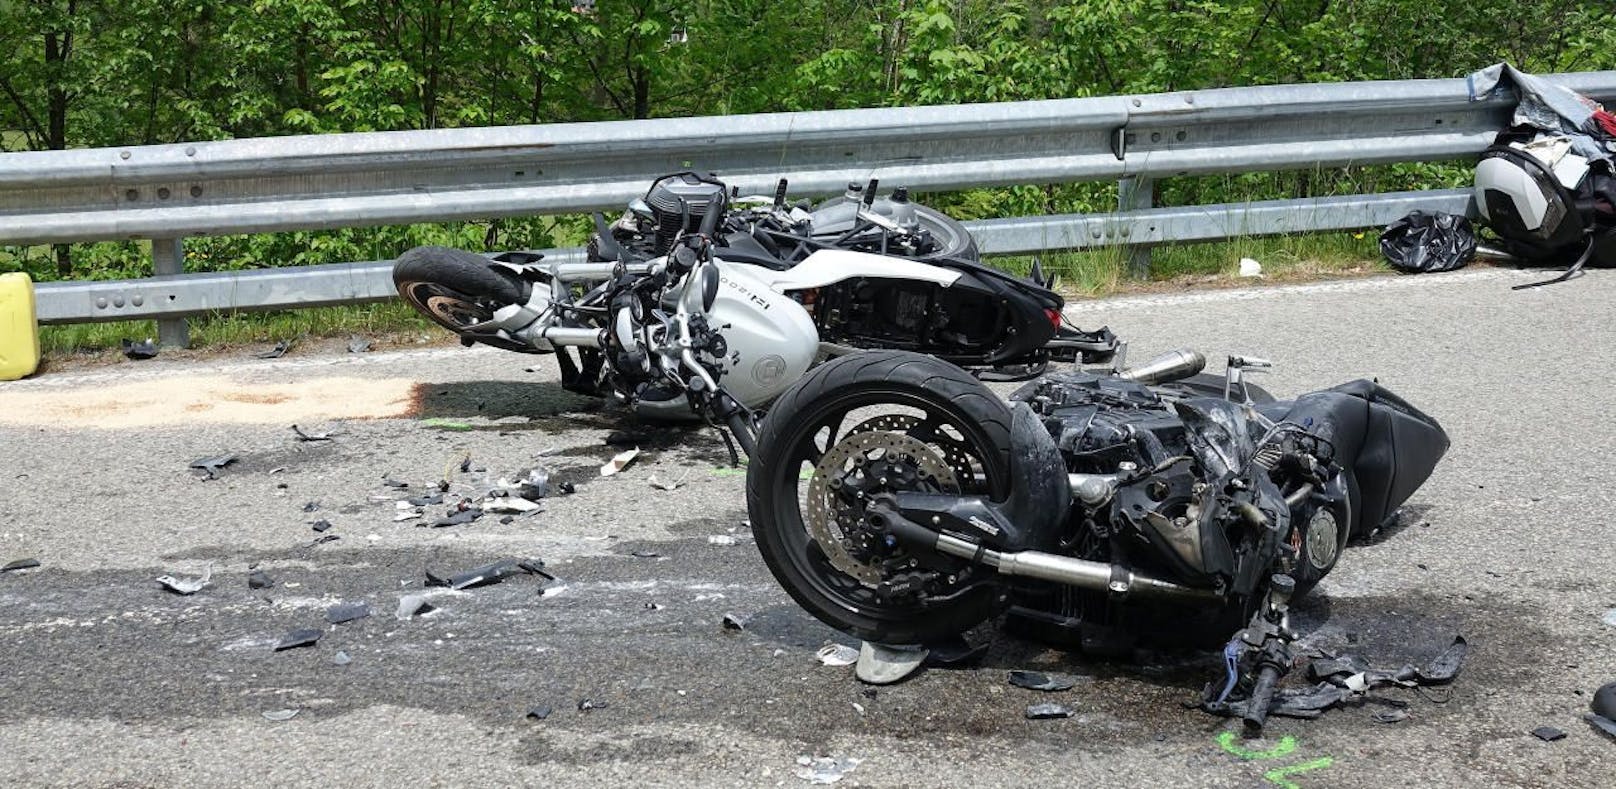 Motorradfahrer kollidieren frontal – schwer verletzt